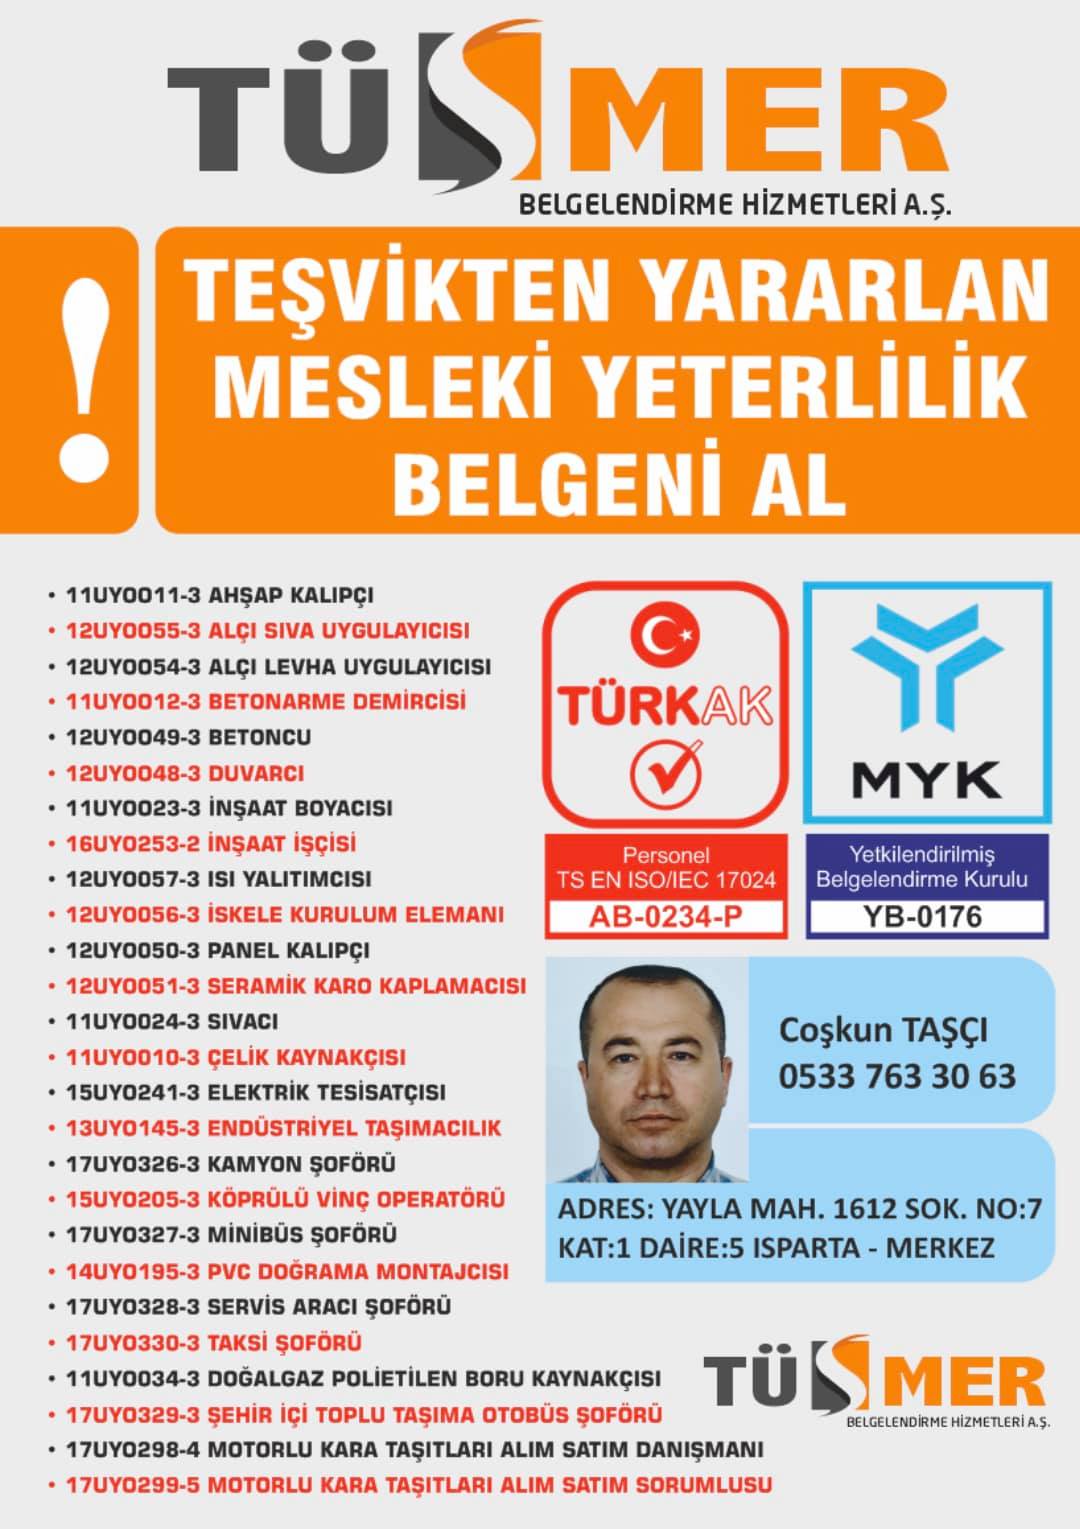 MYK MESLEKİ YETERLİLİK BELGESİ Tomtom Beyoğlu İstanbul